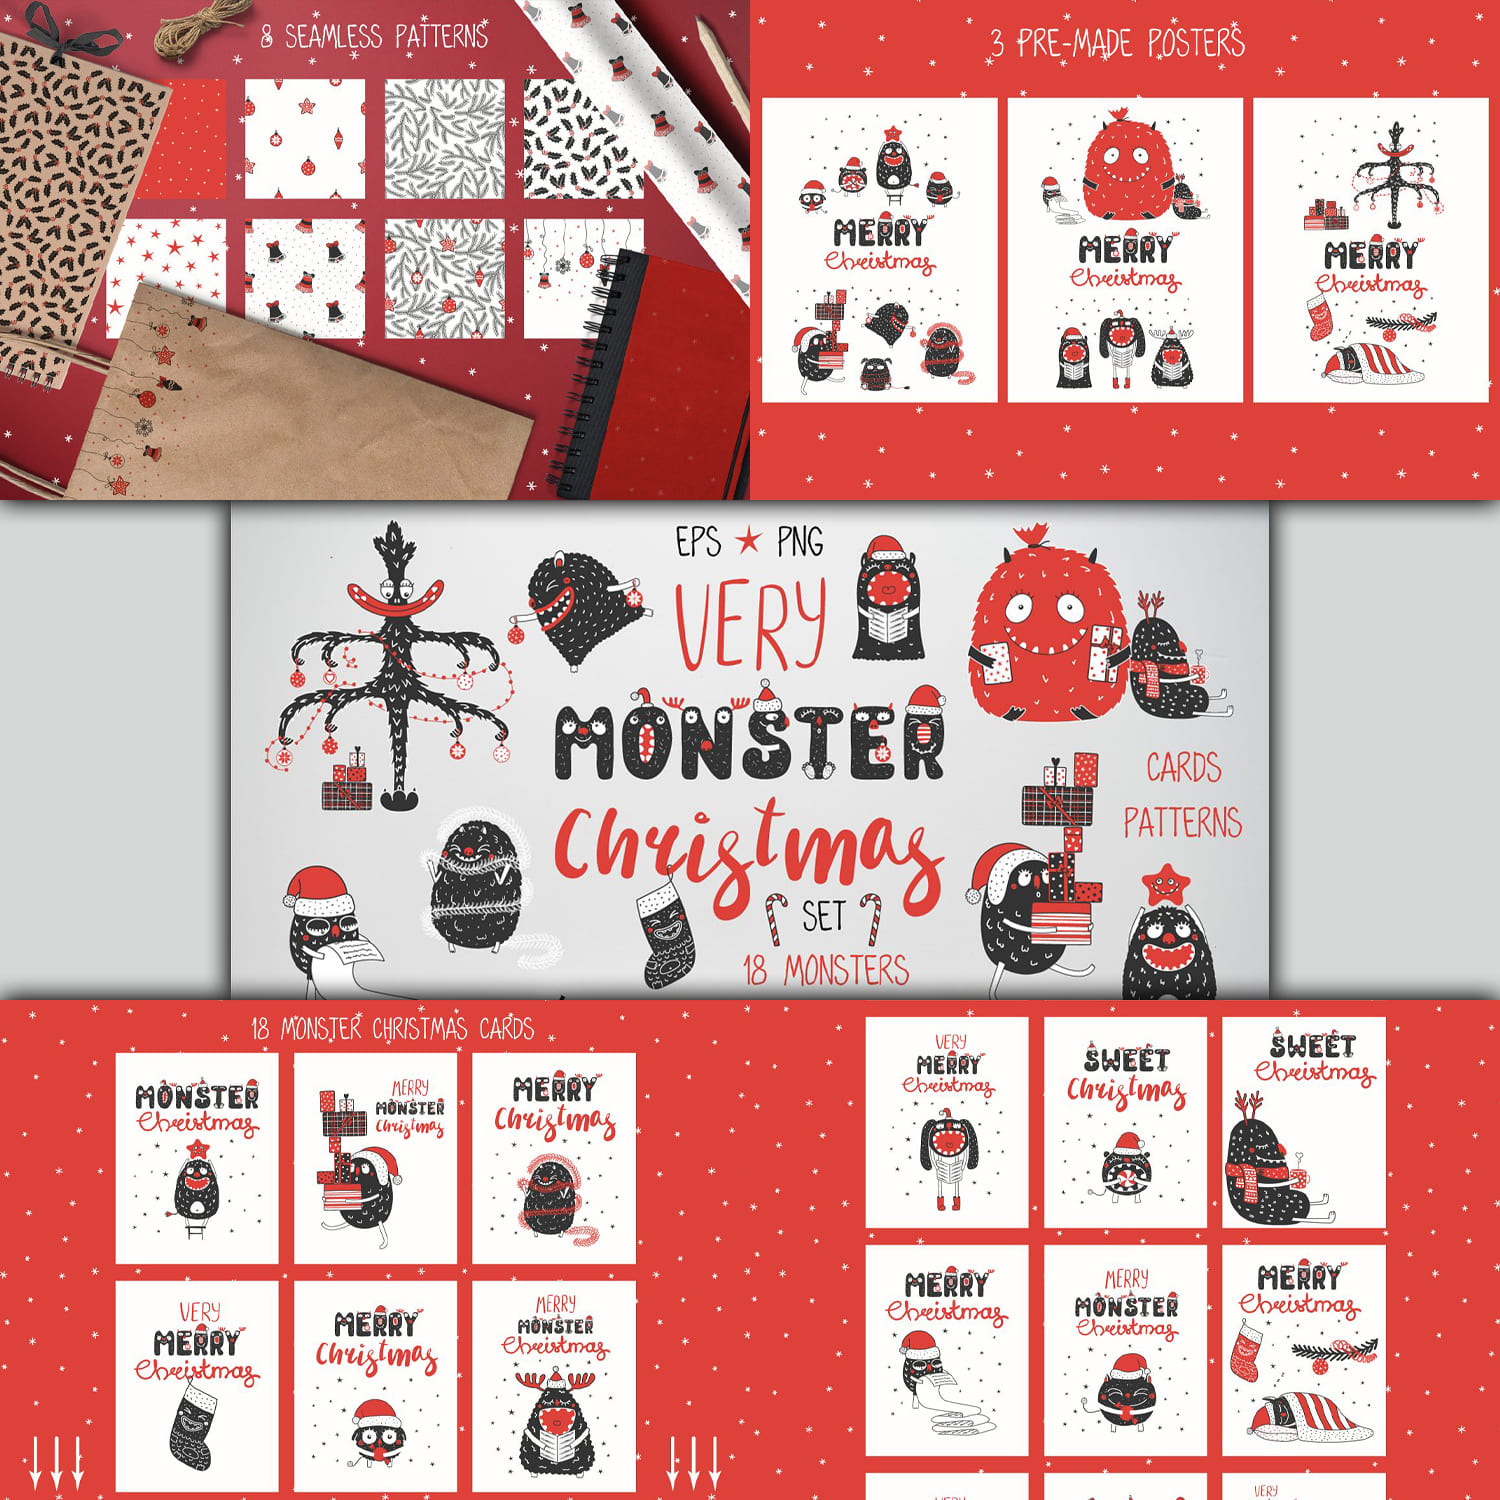 Very Monster Christmas Vector Art cover.